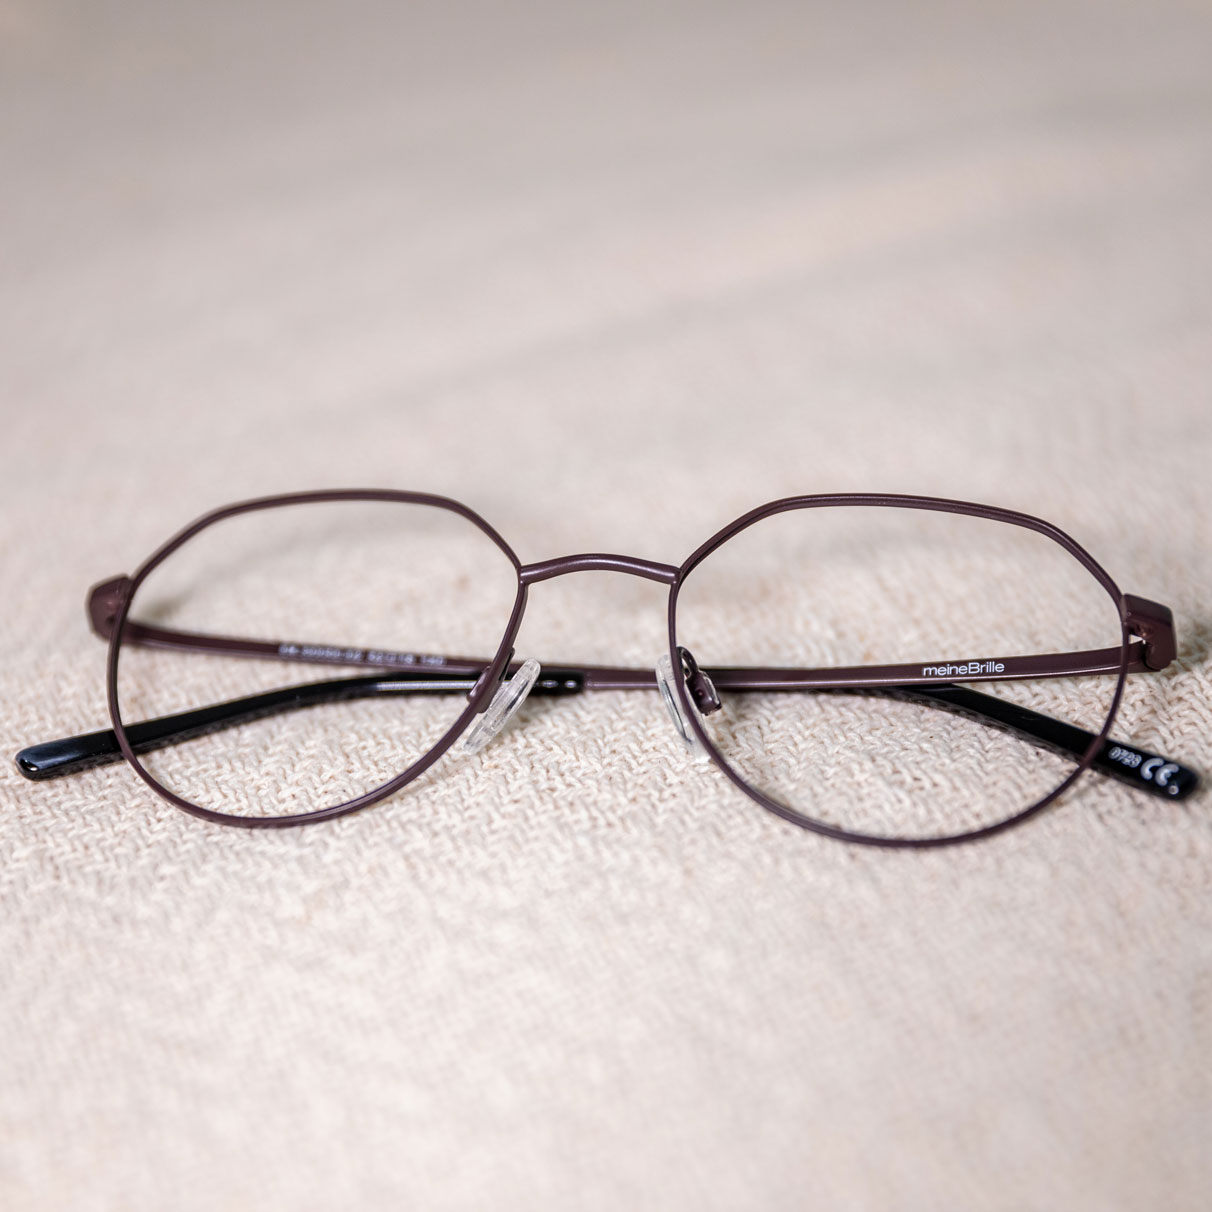 meineBrille Modelle für Gleitsichtbrillen mit Zeiss Gläsern